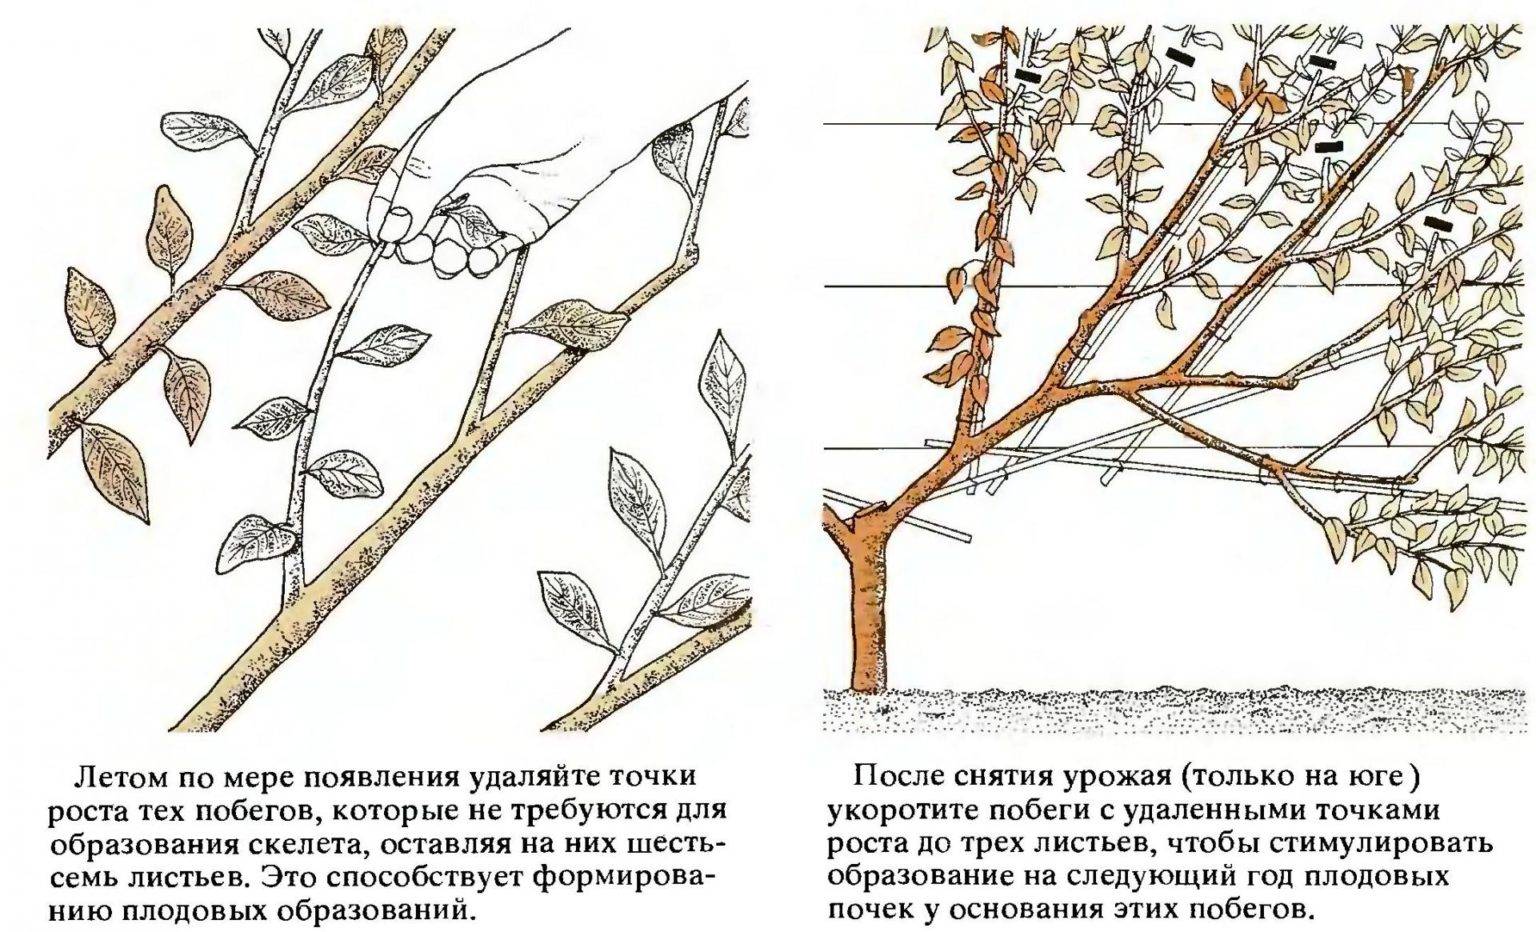 Колоновидная вишня: описание сортов, правила посадки и ухода, обрезка, размножение